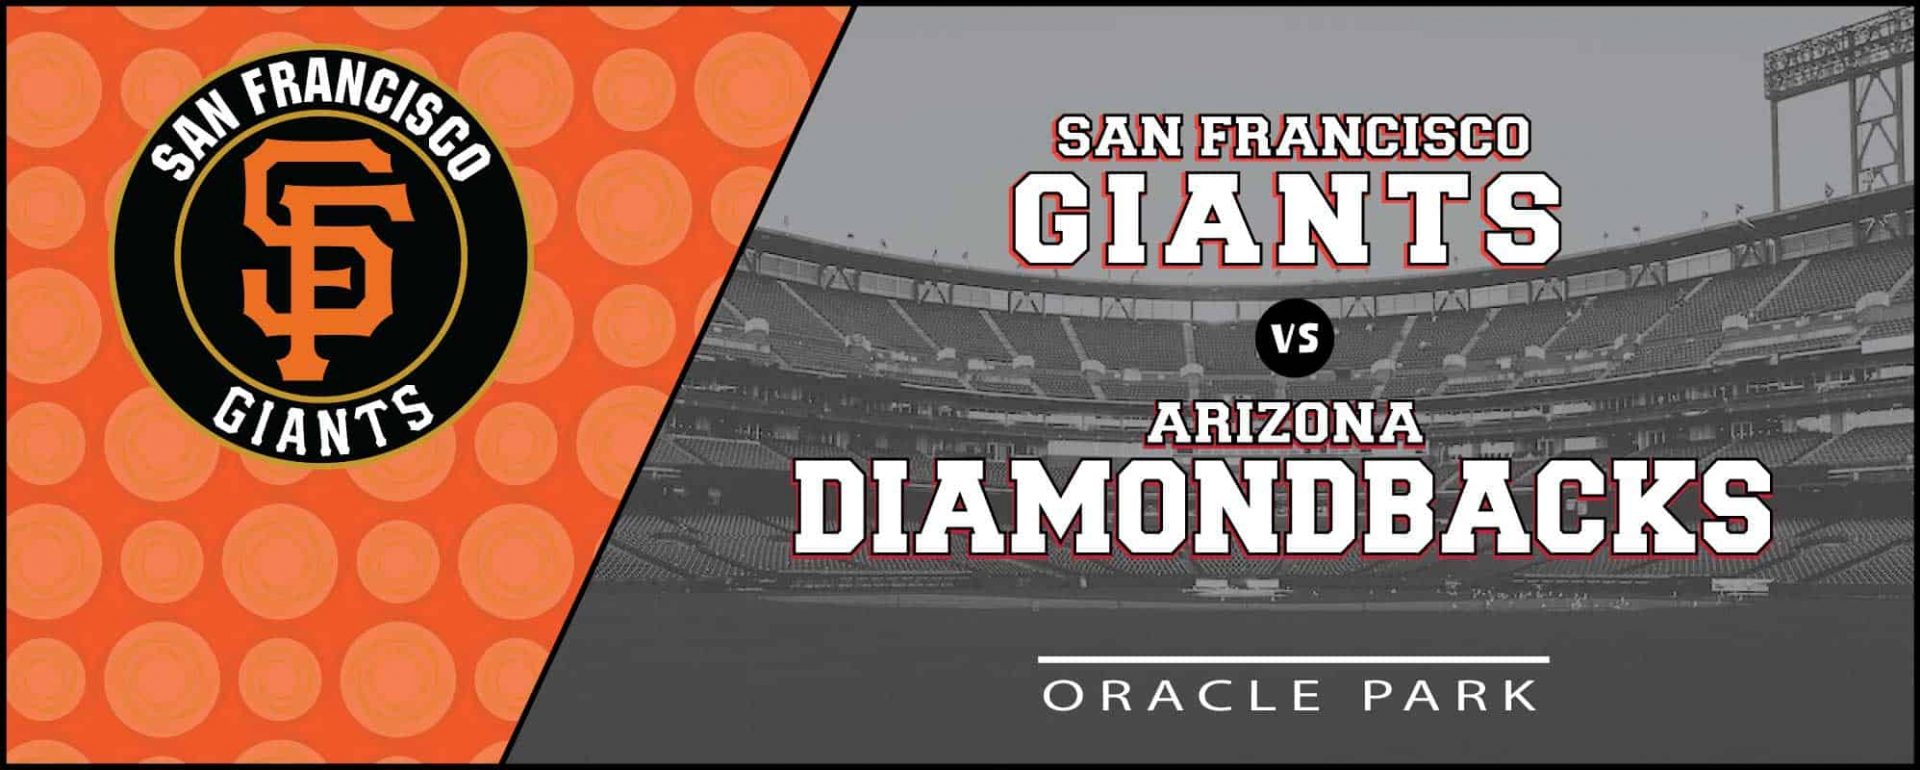 Giants vs. Diamondbacks